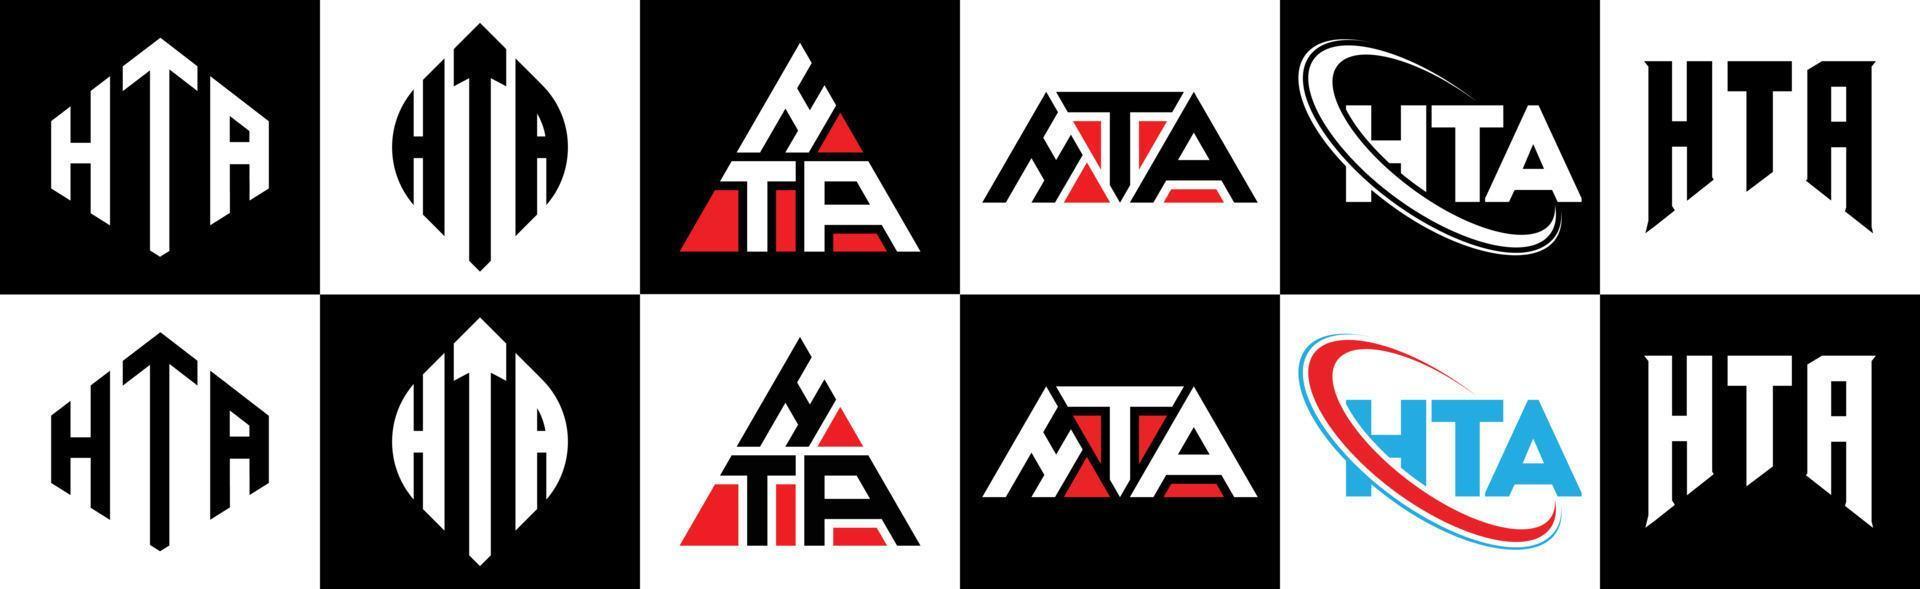 Hta-Buchstaben-Logo-Design in sechs Stilen. hta polygon, kreis, dreieck, sechseck, flacher und einfacher stil mit schwarz-weißem buchstabenlogo in einer zeichenfläche. hta minimalistisches und klassisches Logo vektor